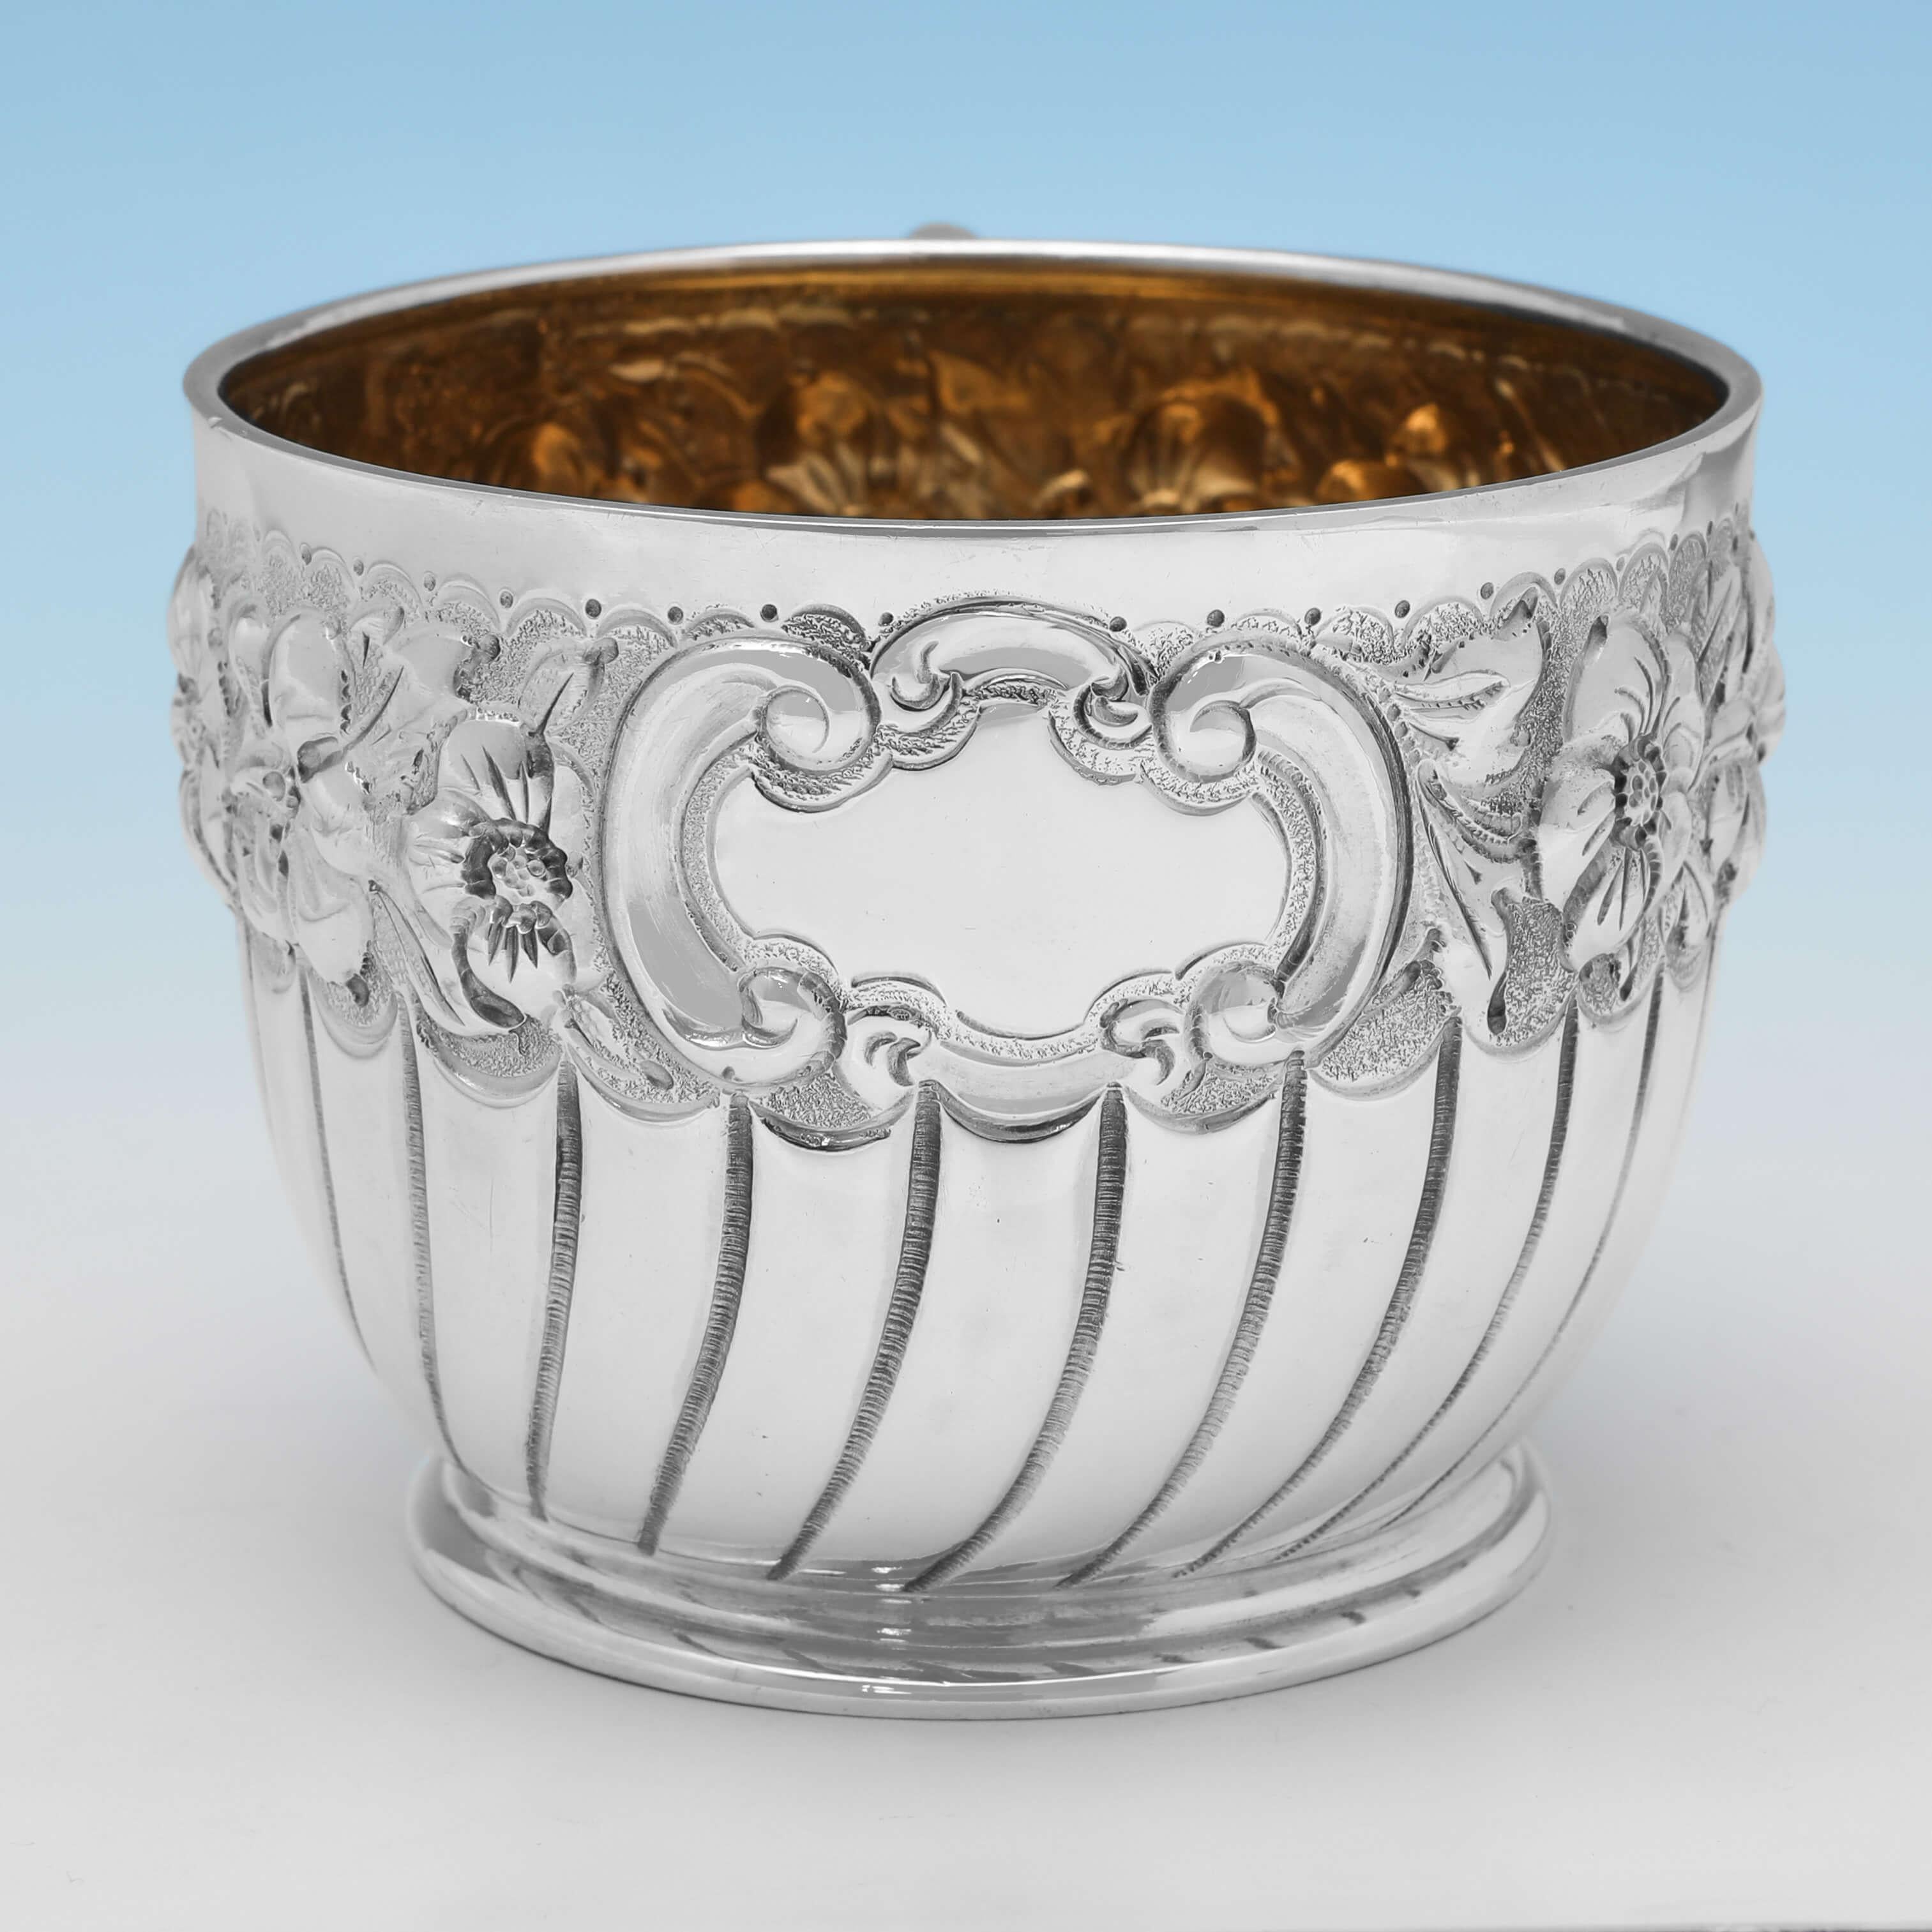 Poinçonnée à Londres en 1896 par Charles Edwards, cette jolie tasse de baptême en argent sterling ancien présente une demi-cannelure tourbillonnante, une bordure florale ciselée et un intérieur doré. 

La tasse de baptême mesure 6,5 cm de haut, 11